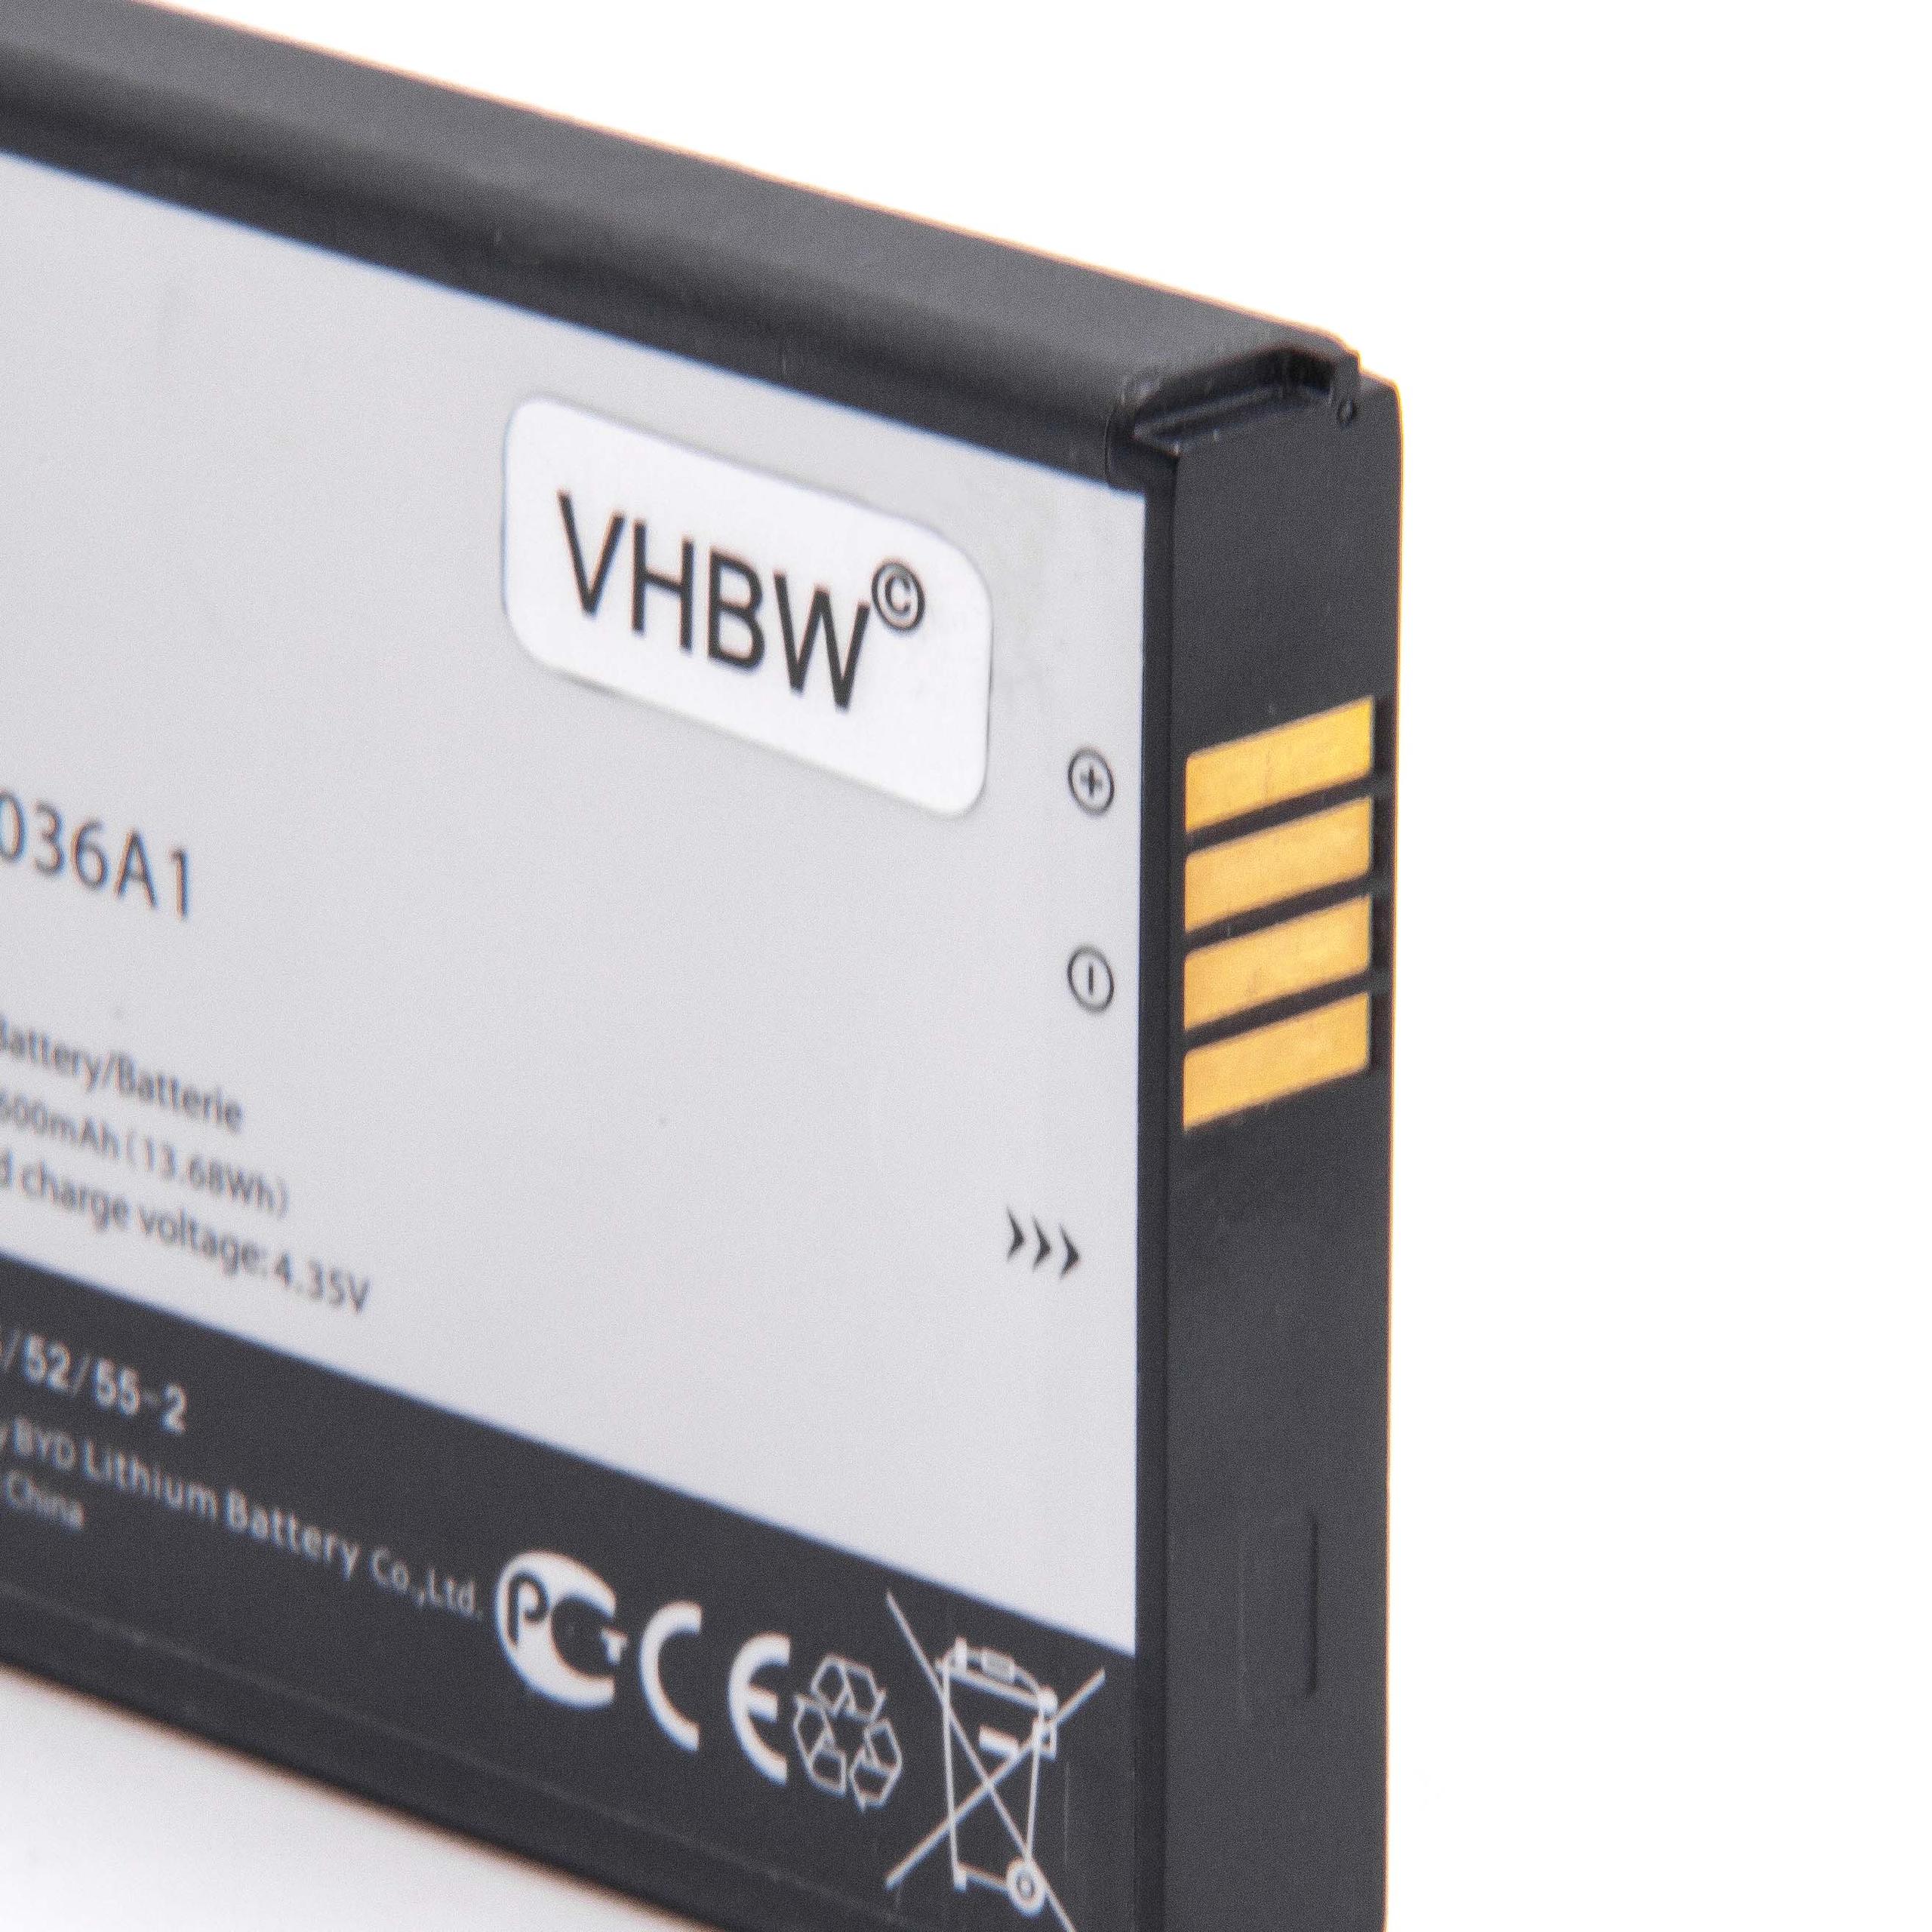 Batteria per hotspot modem router portatile sostituisce TLi036A1 Alcatel - 3800mAh 3,8V Li-Ion